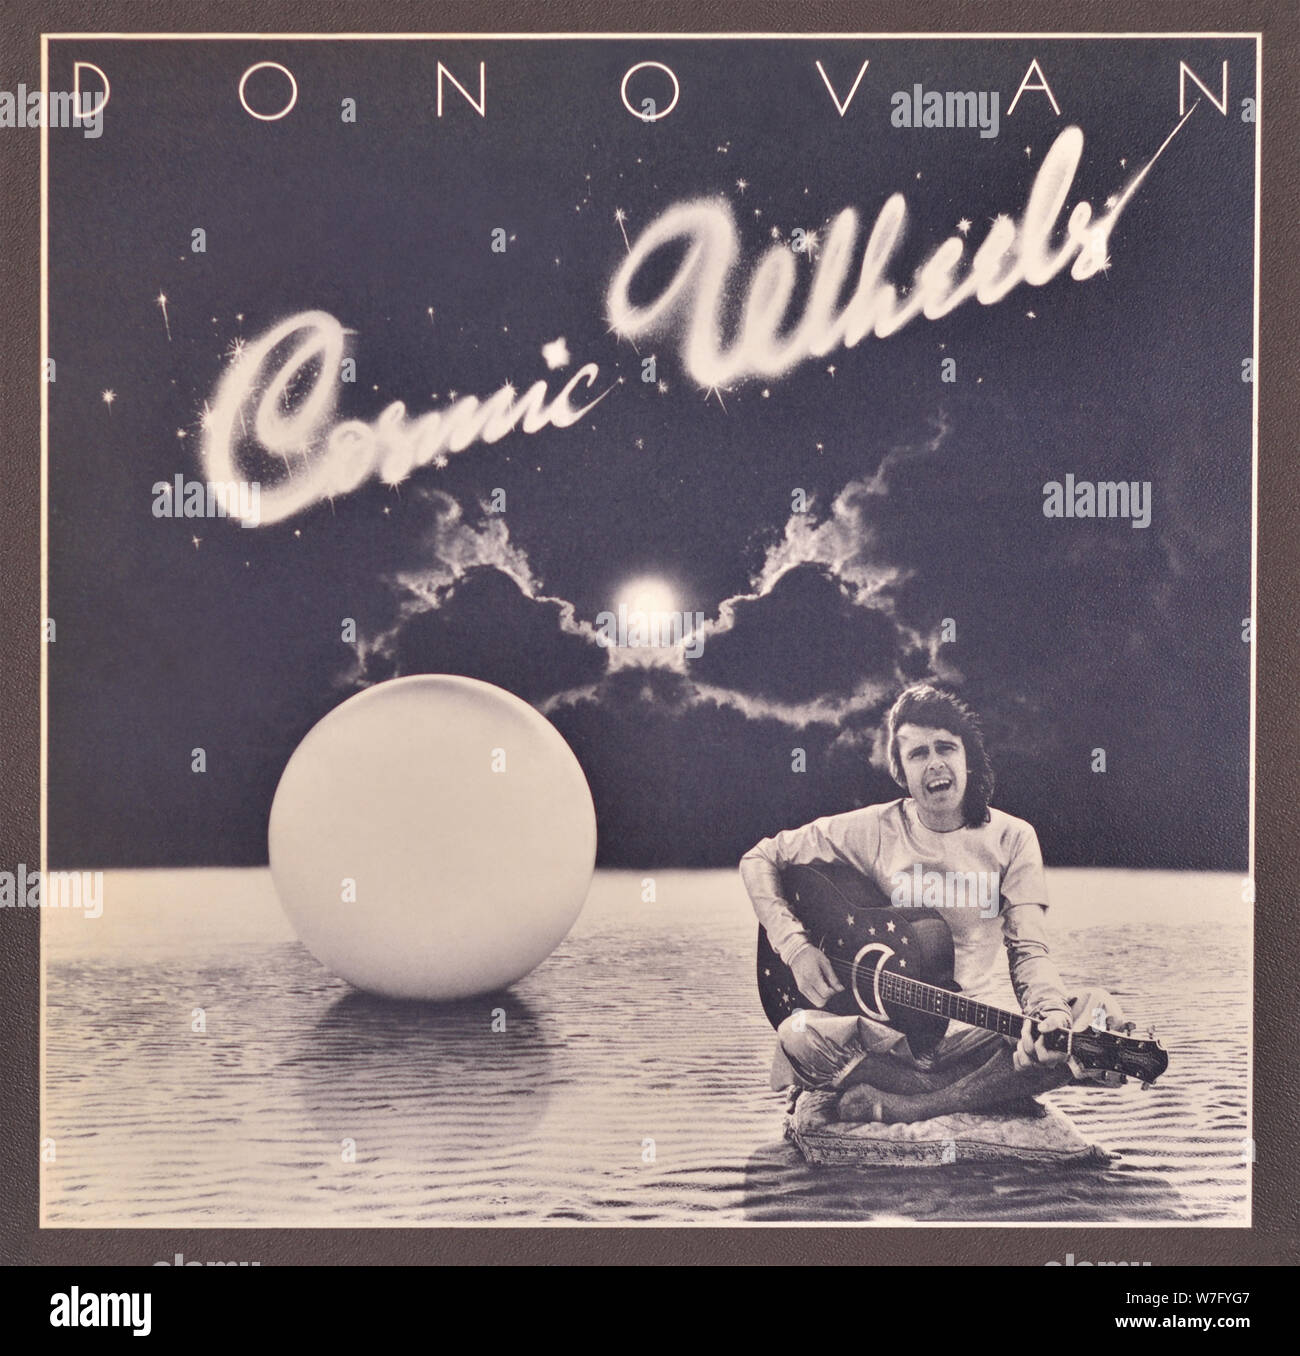 Donovan - couverture originale de l'album en vinyle - Cosmic Wheels - 1994 Banque D'Images